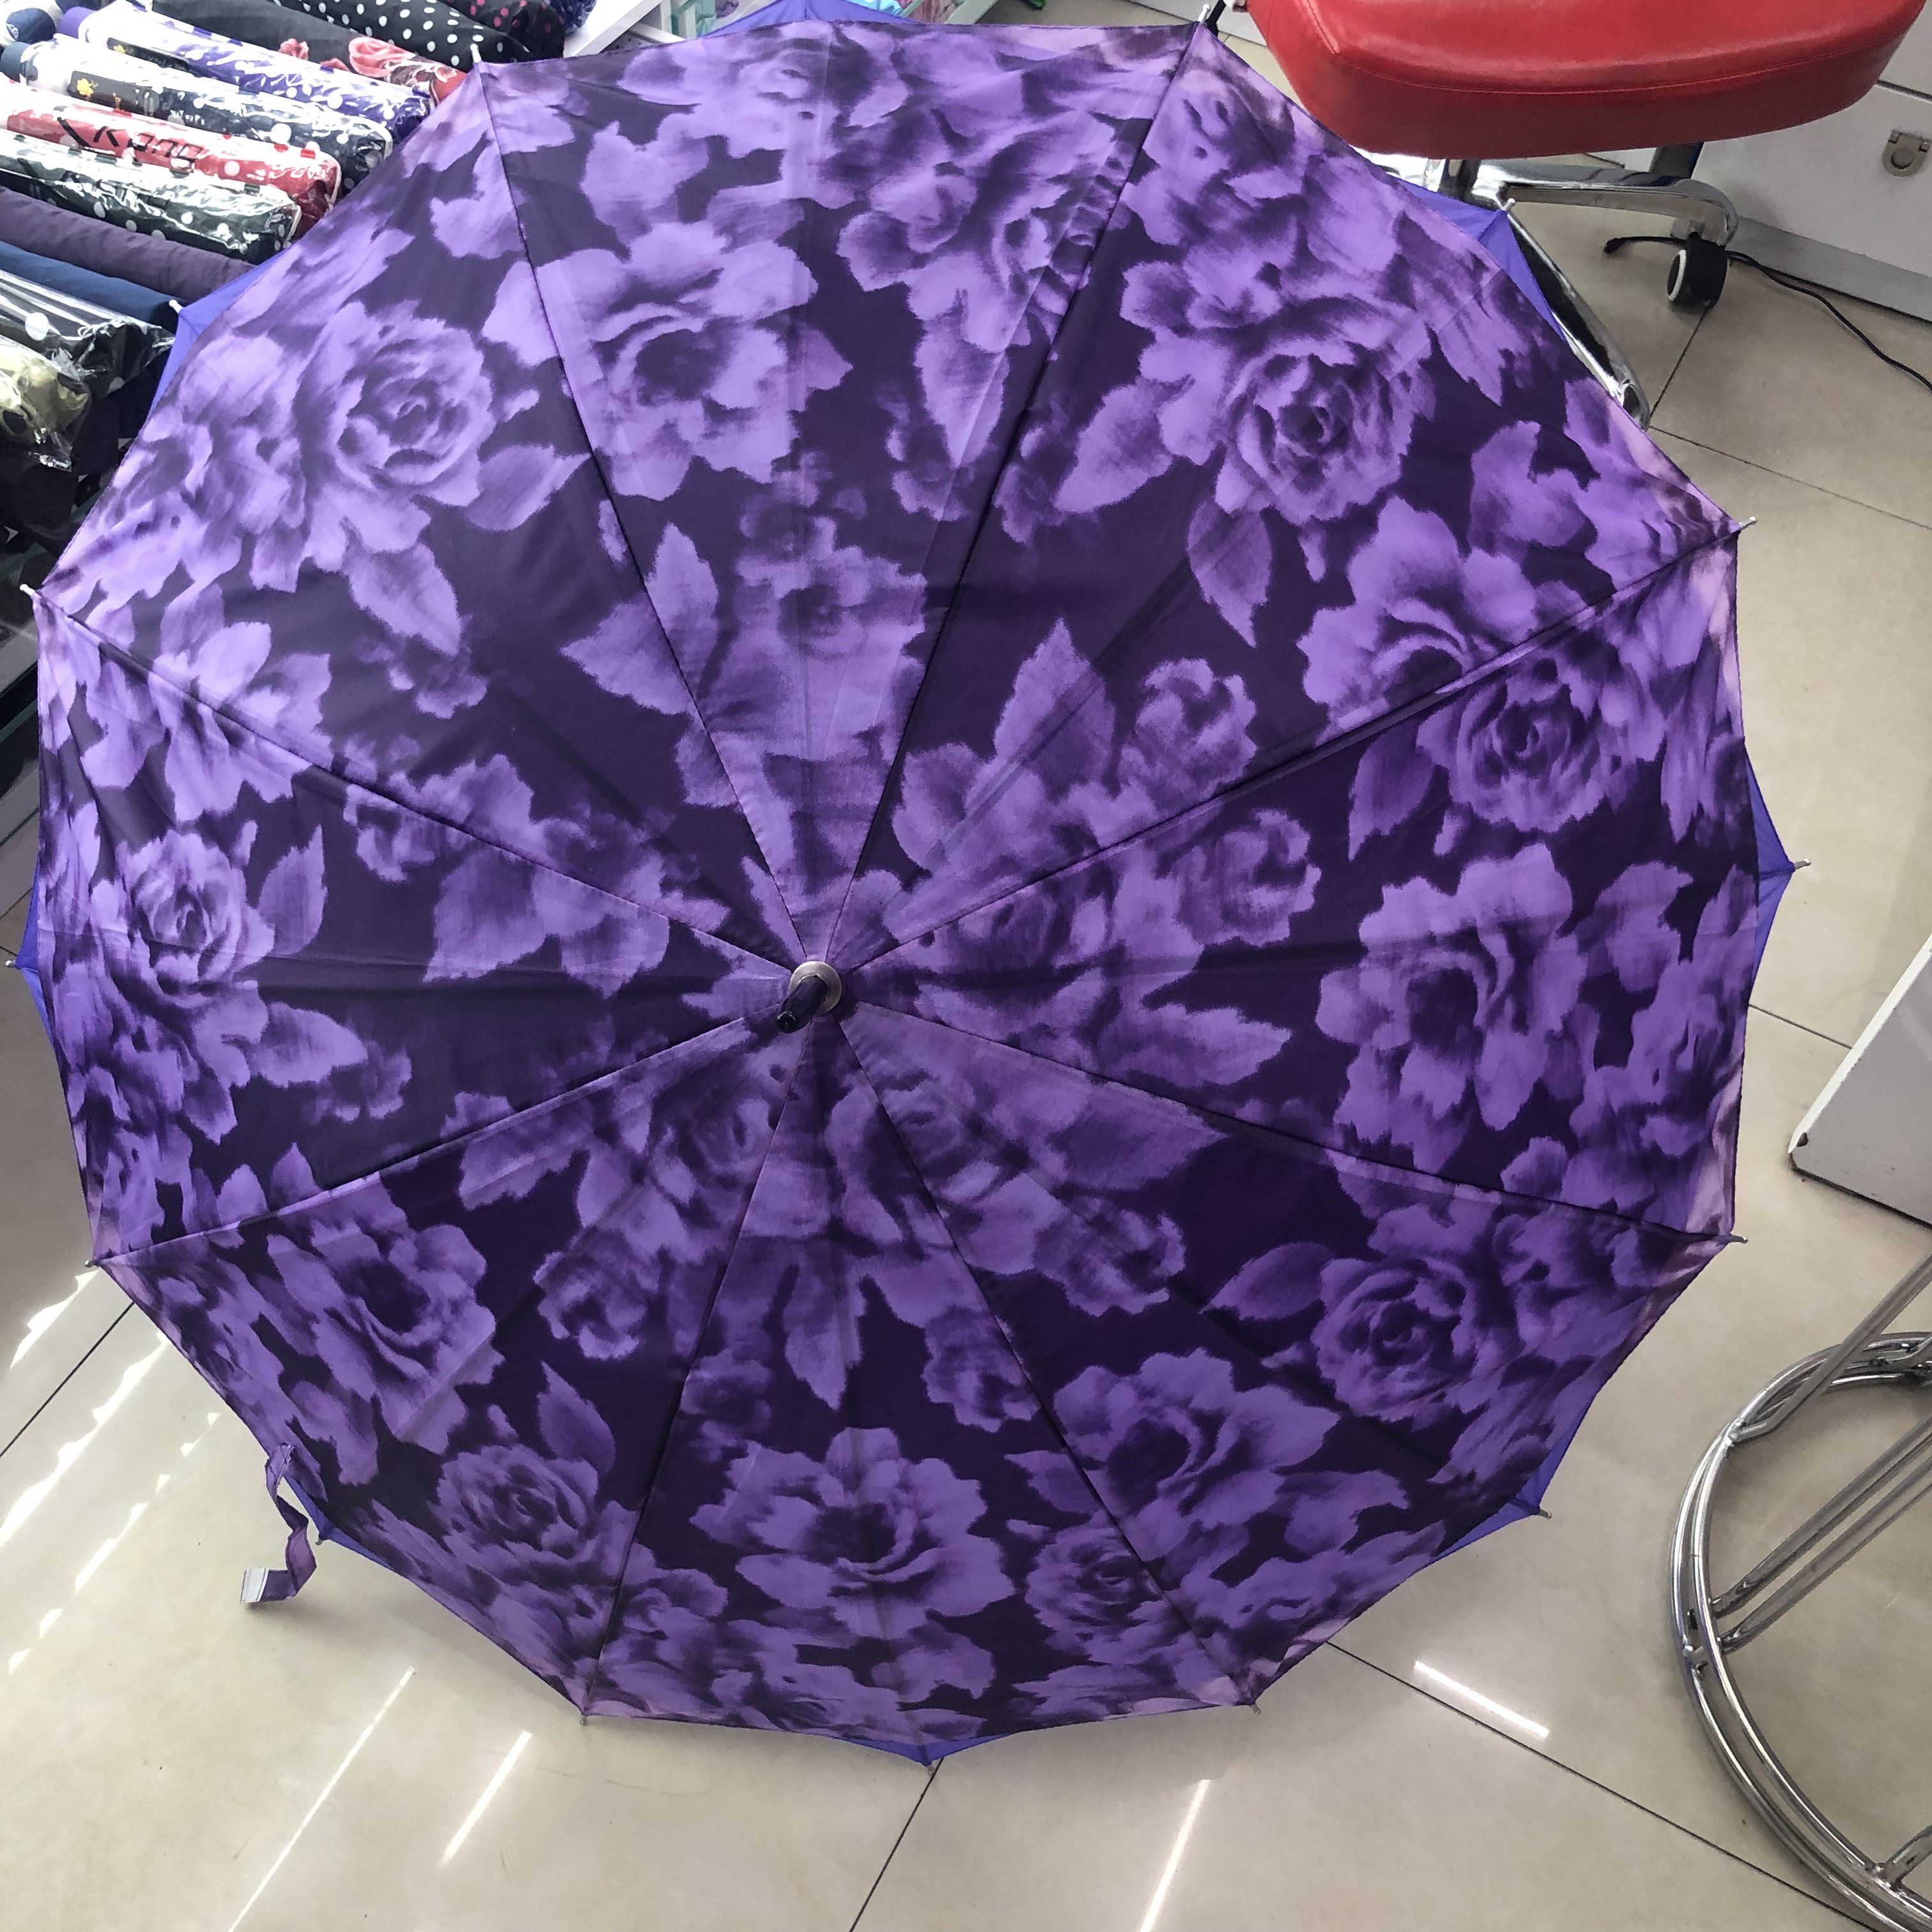 直杆伞天堂伞雨伞折叠晴雨两用伞防晒防紫外线遮阳伞太阳伞男女紫色